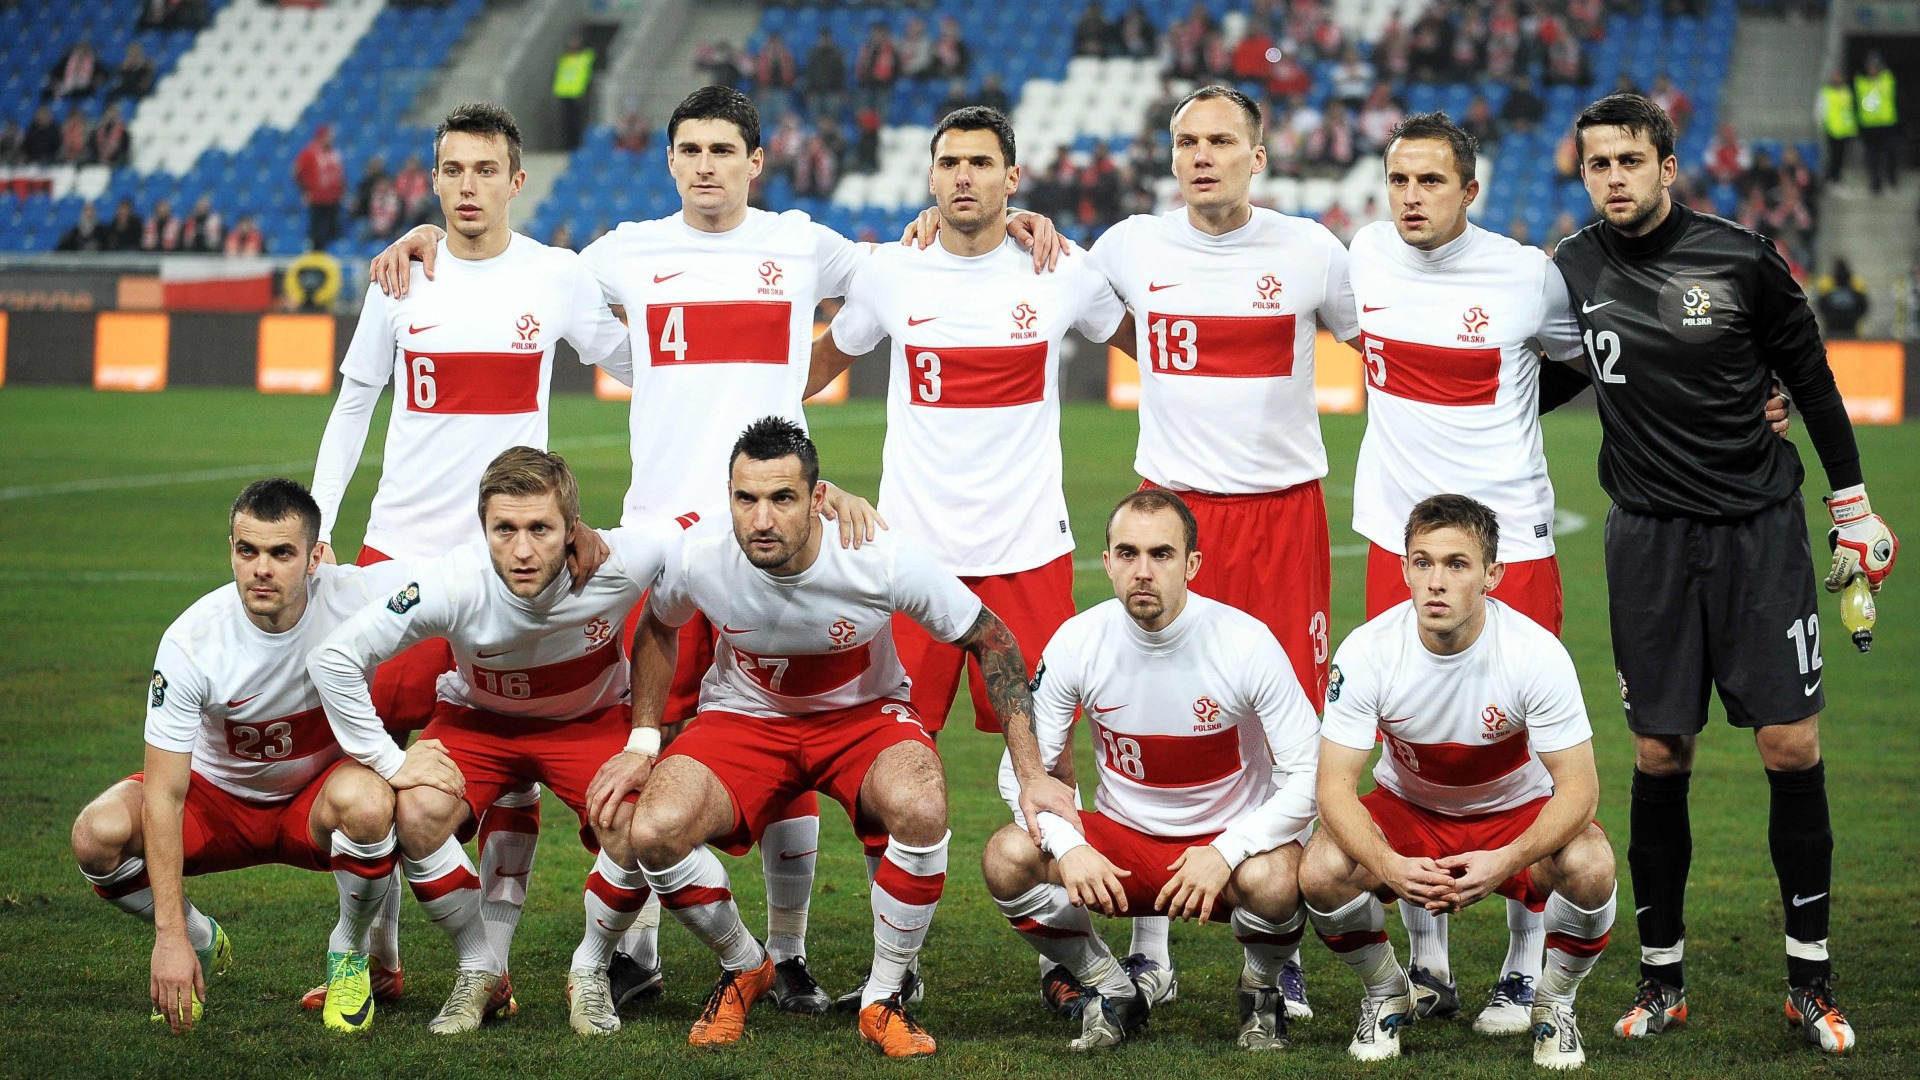 Polska National Team for 1920 x 1080 HDTV 1080p resolution